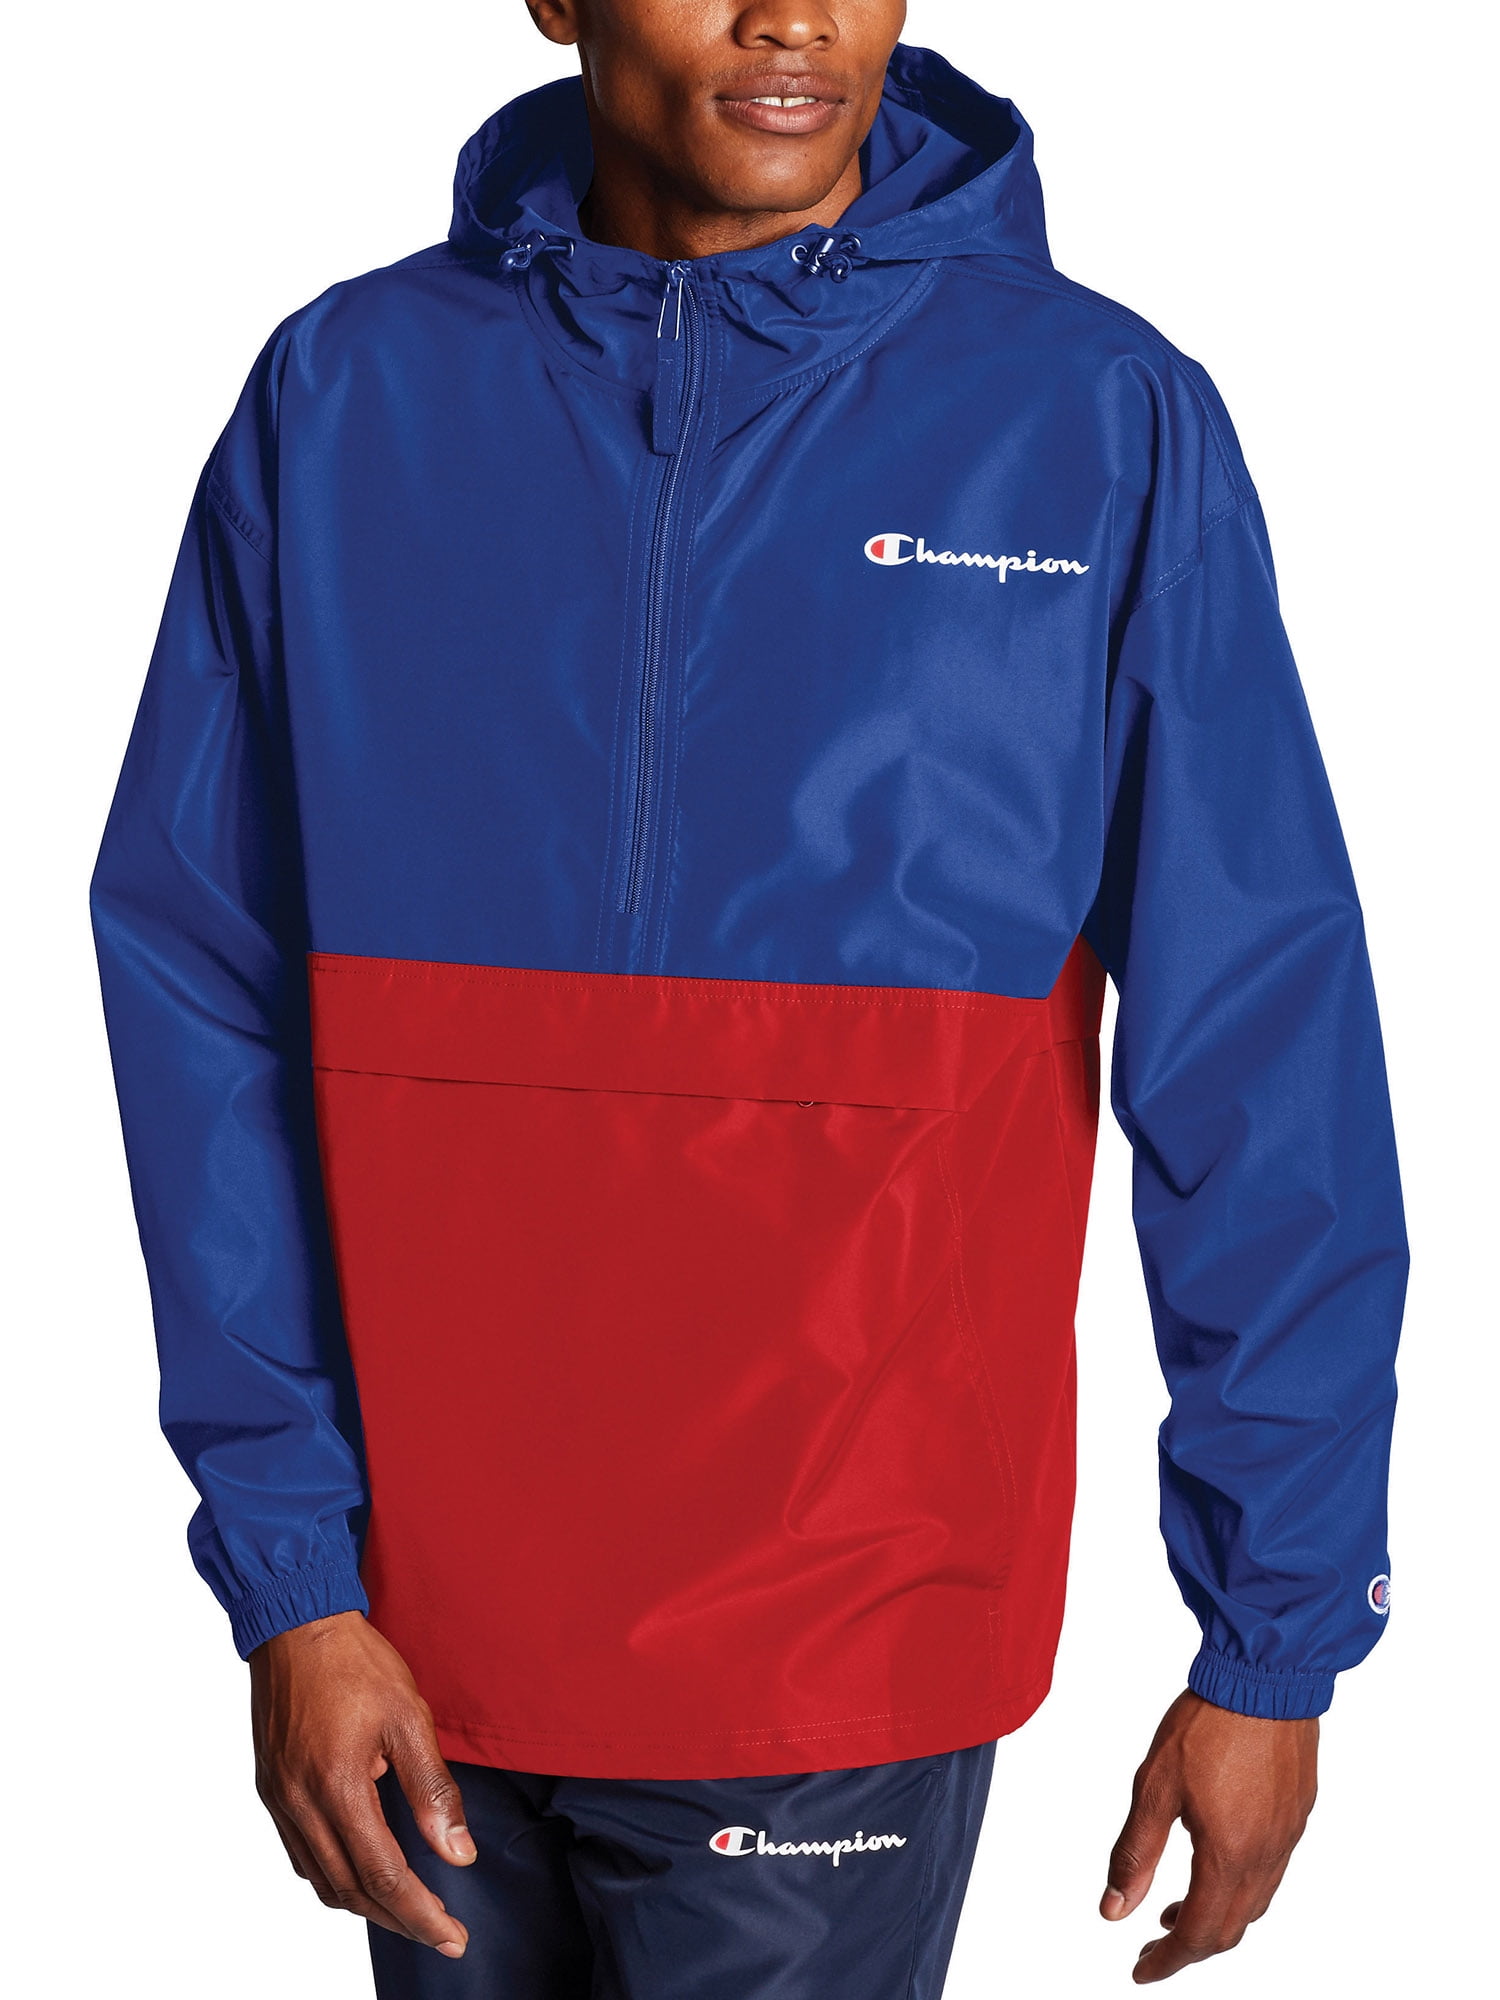 Champion Men's Colorblocked Packable Jacket, Sizes S-L - Walmart.com